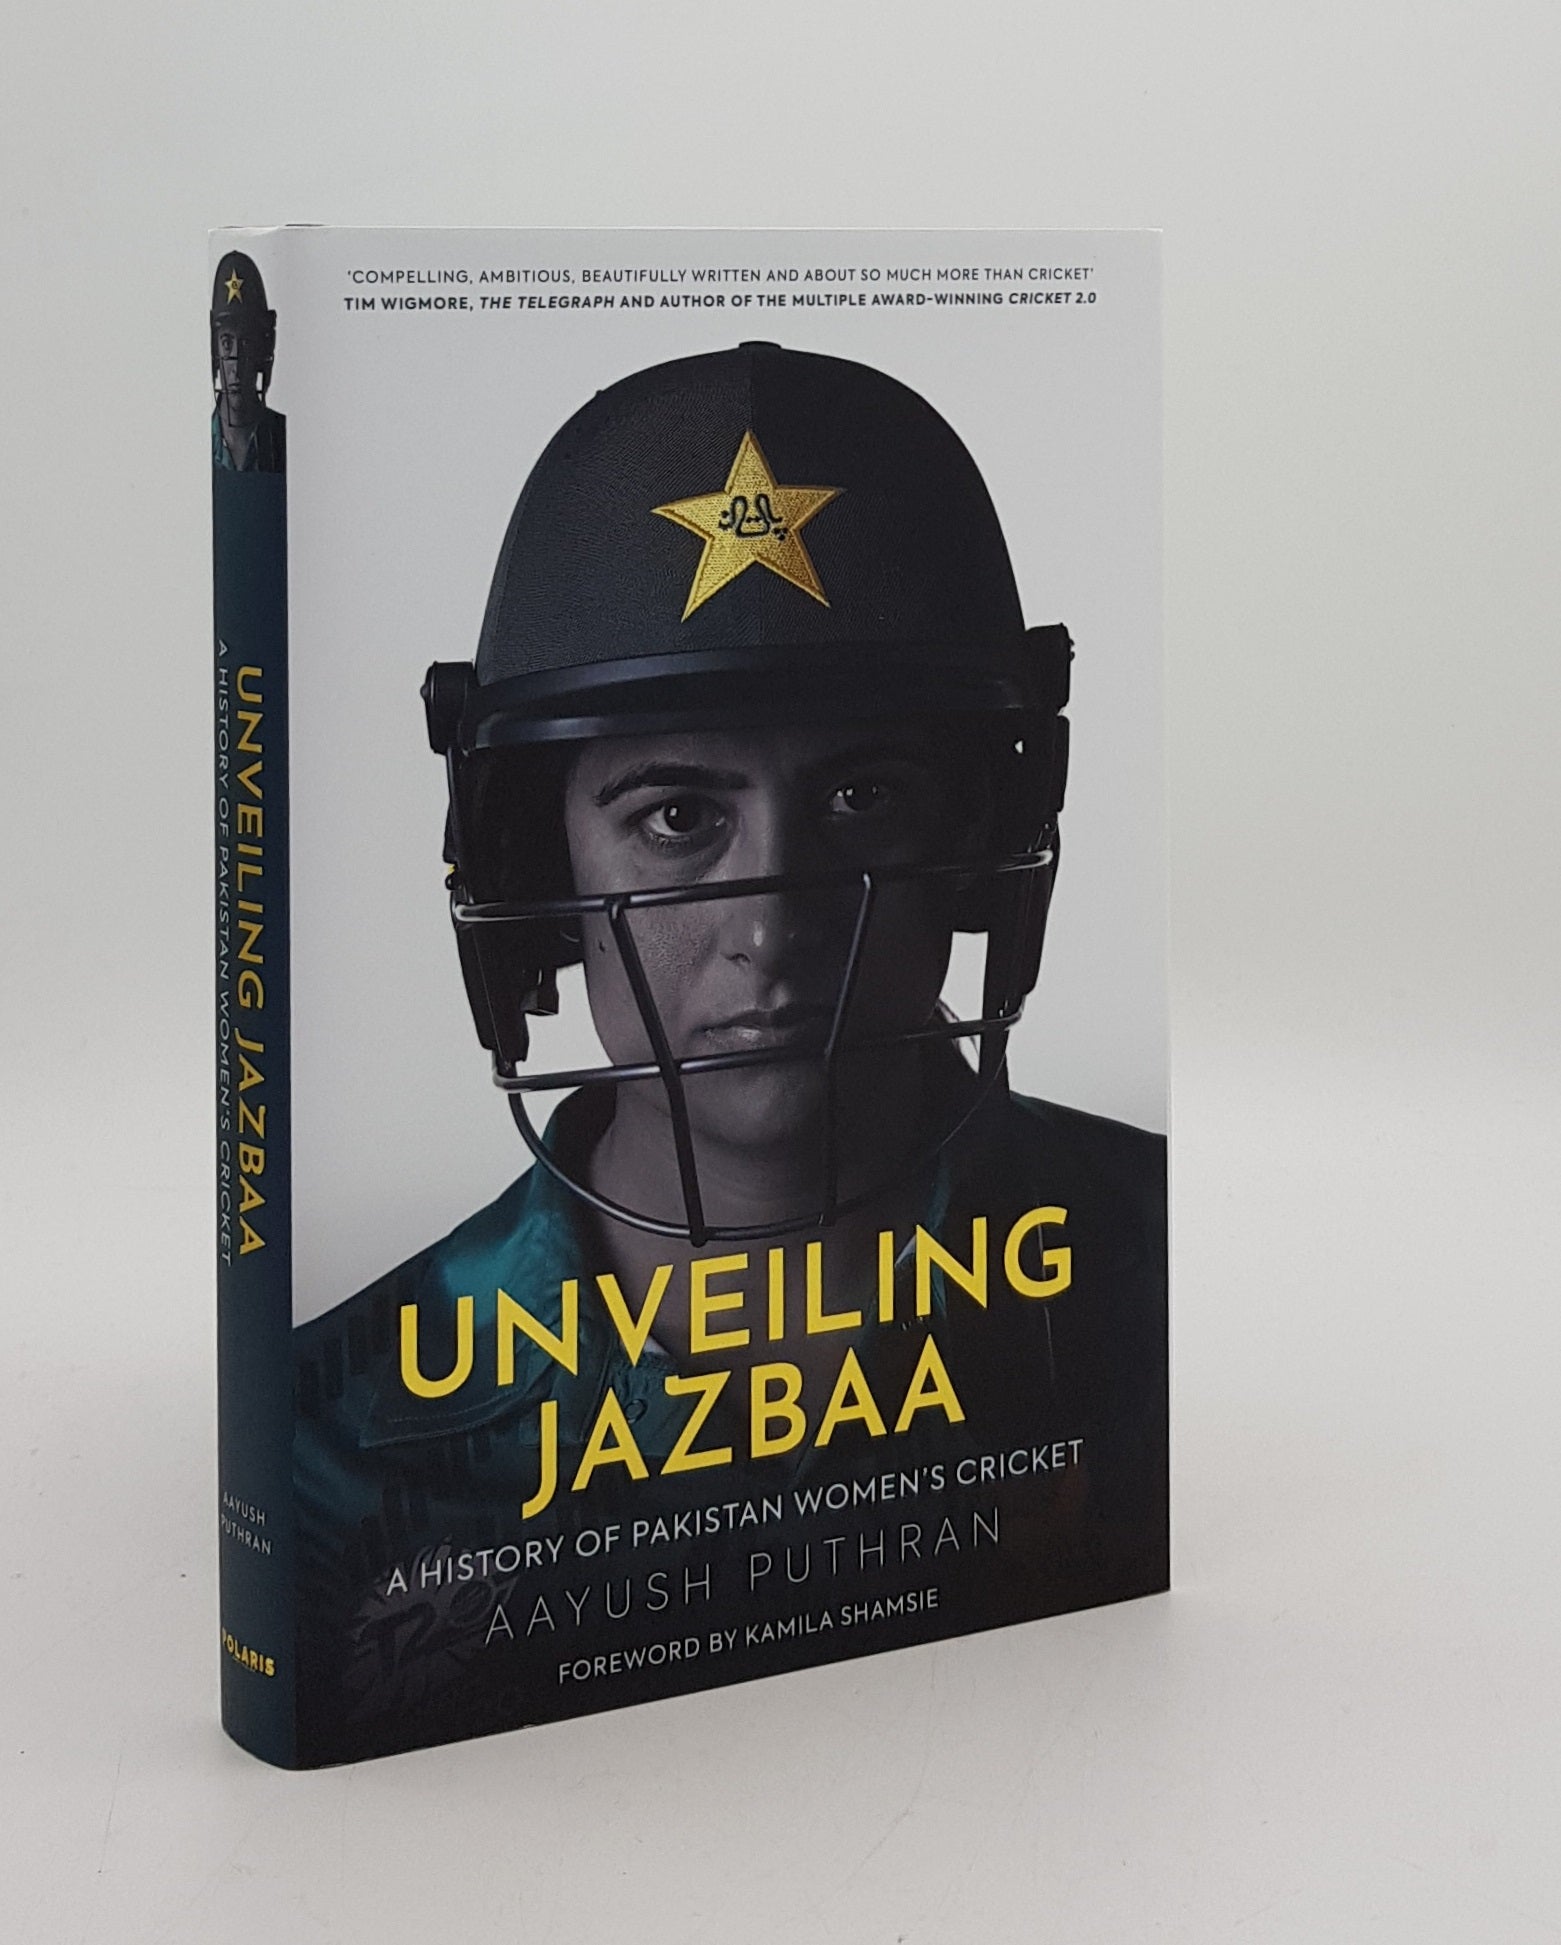 PUTHRAN Aayush - Unveiling Jazbaa a History of Pakistan Women's Cricket